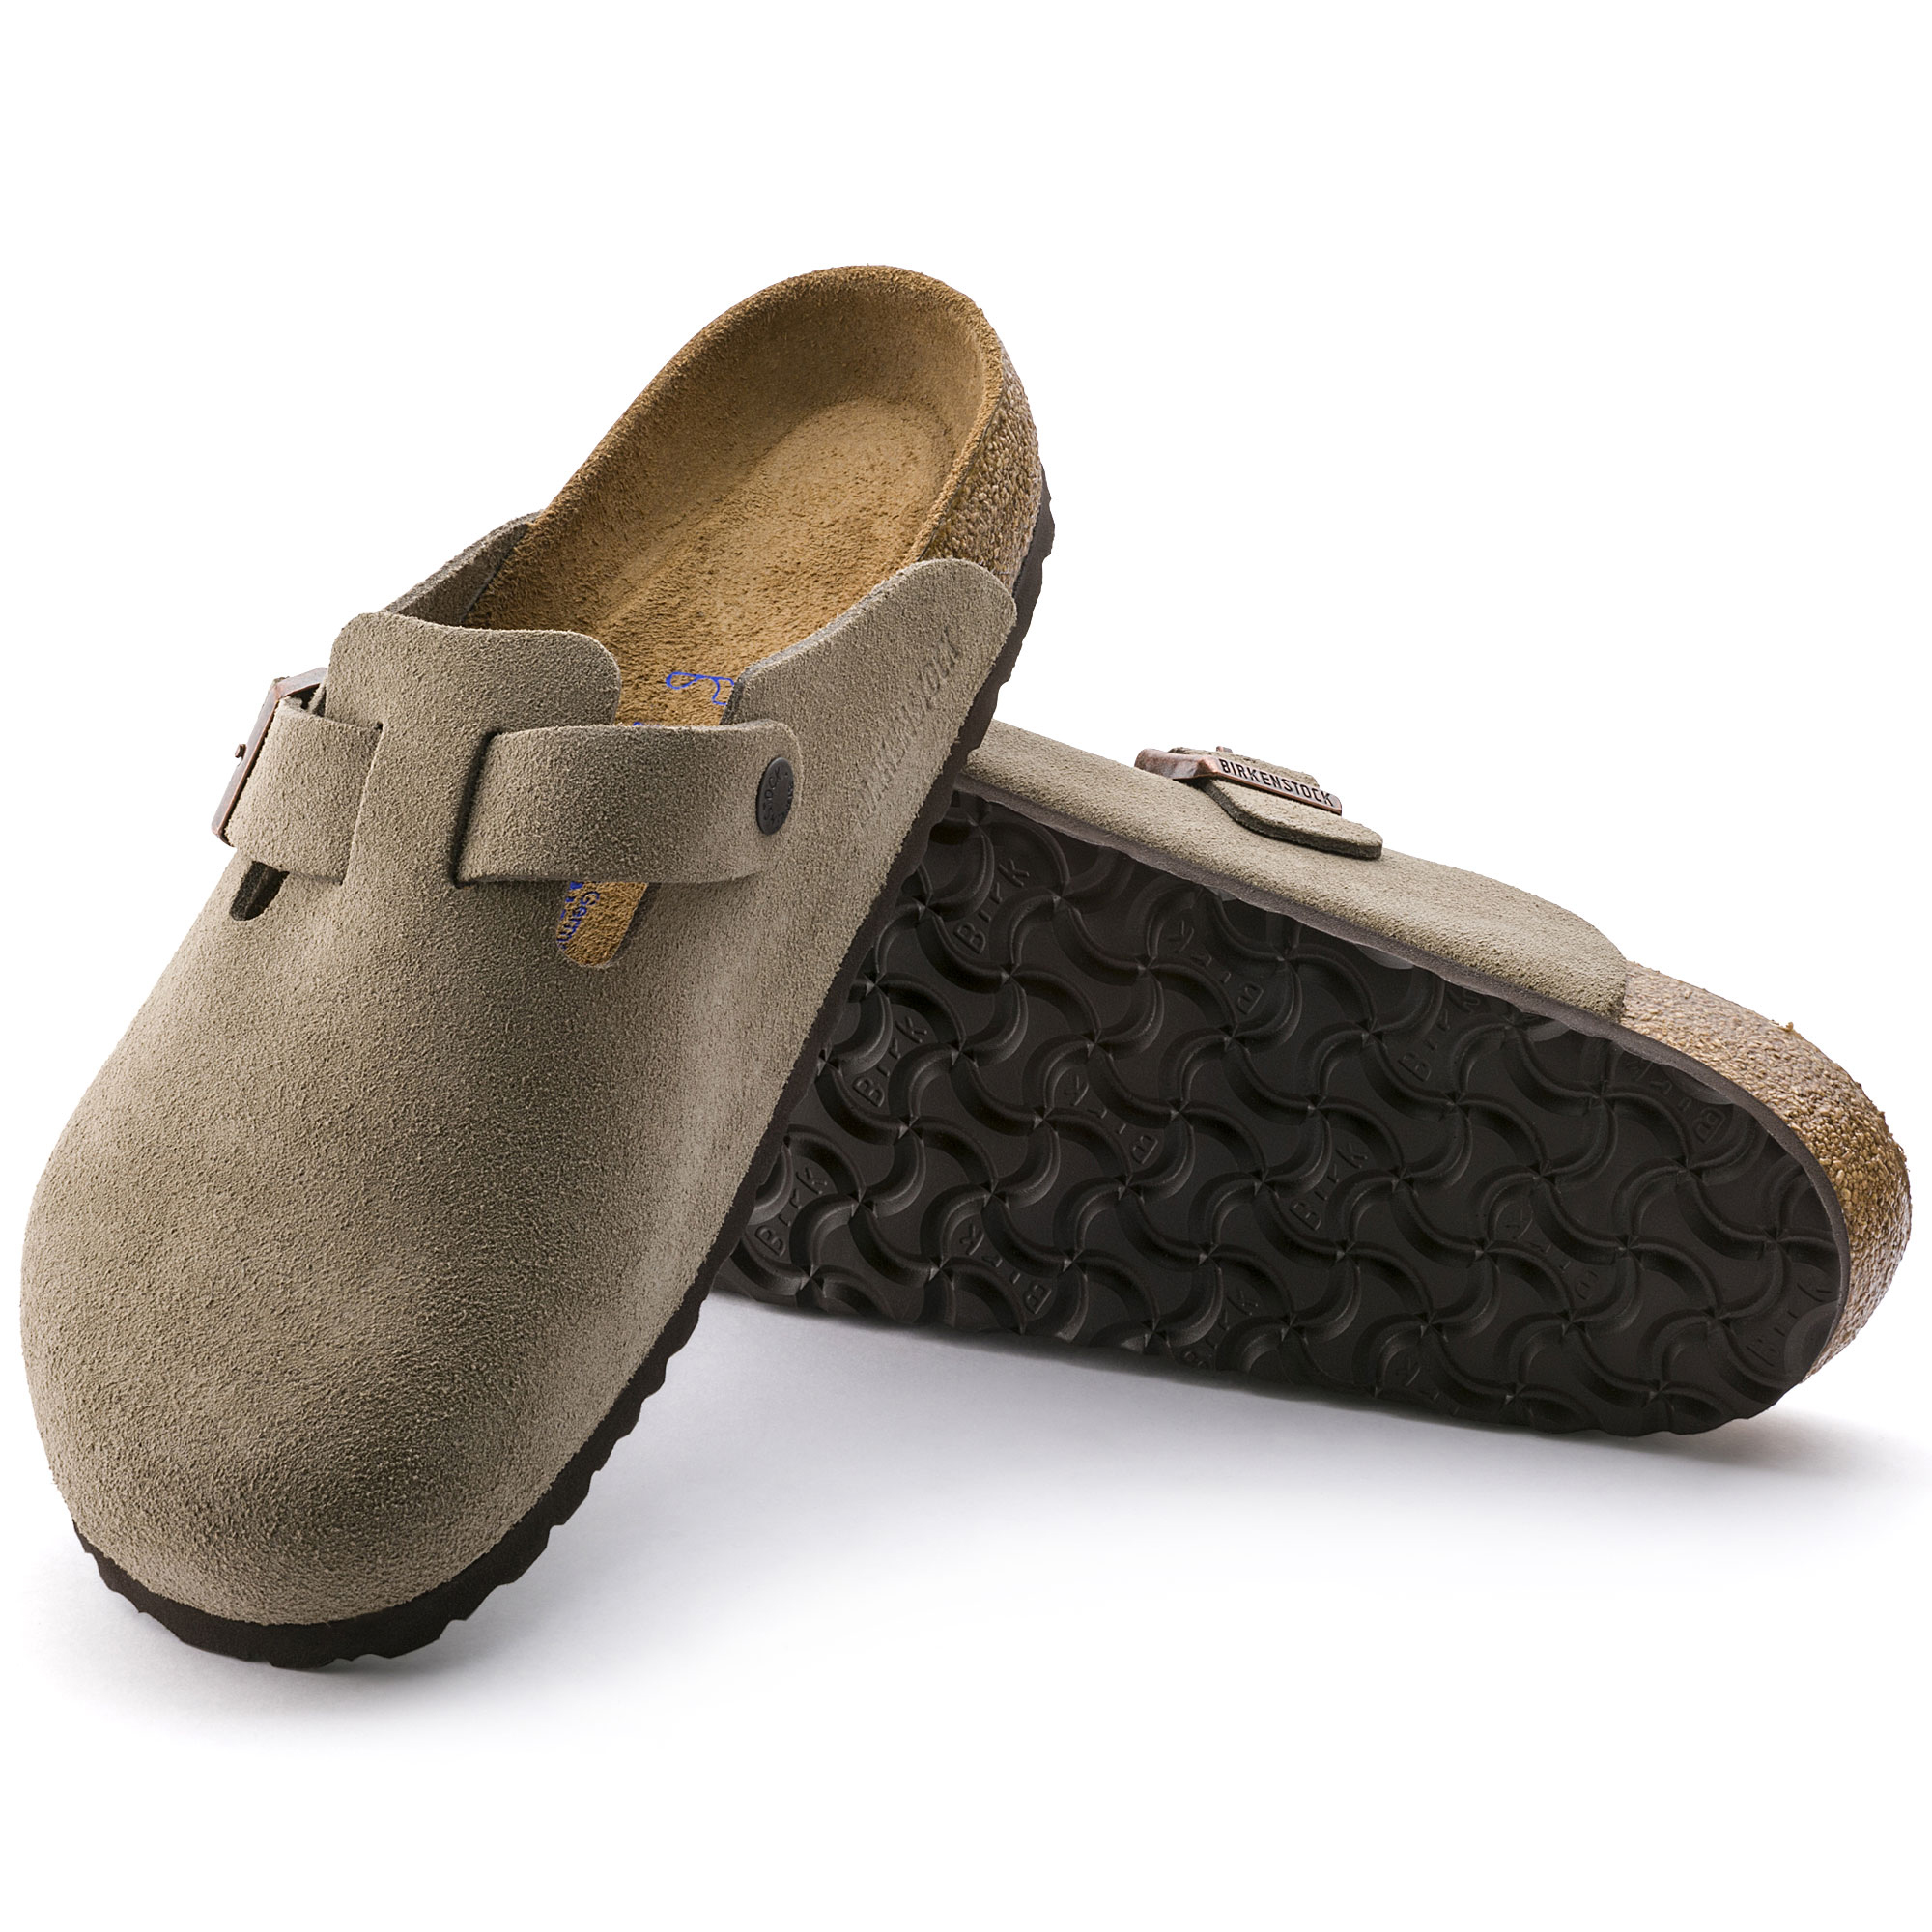 birkenstock clog with heel strap